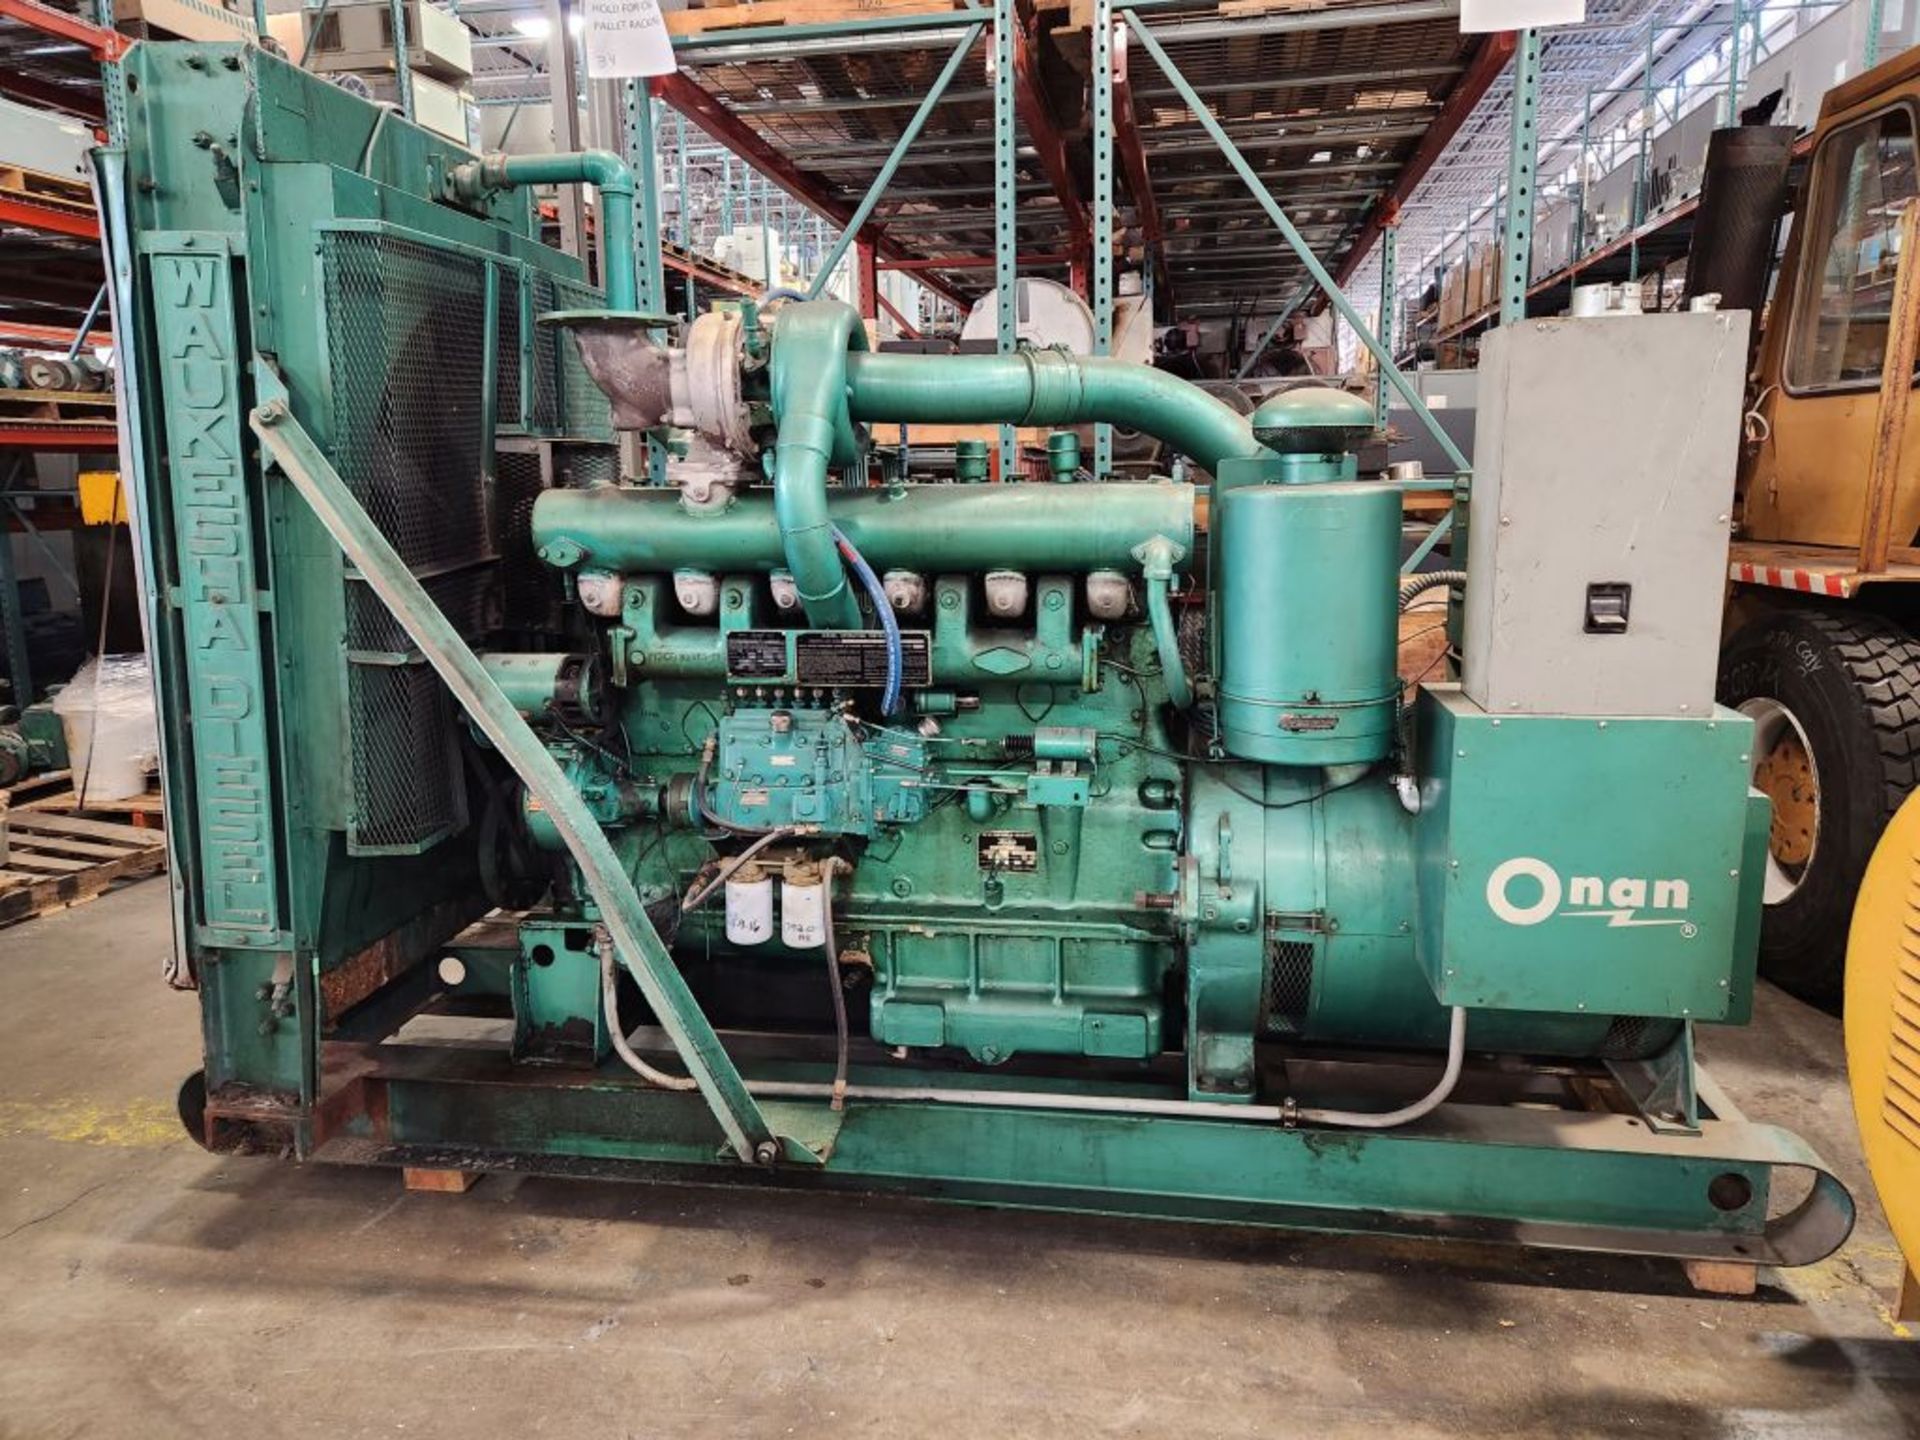 Minneapolis, MN - ONAN 200 KW Diesel Generator with Waukesha Diesel Engine